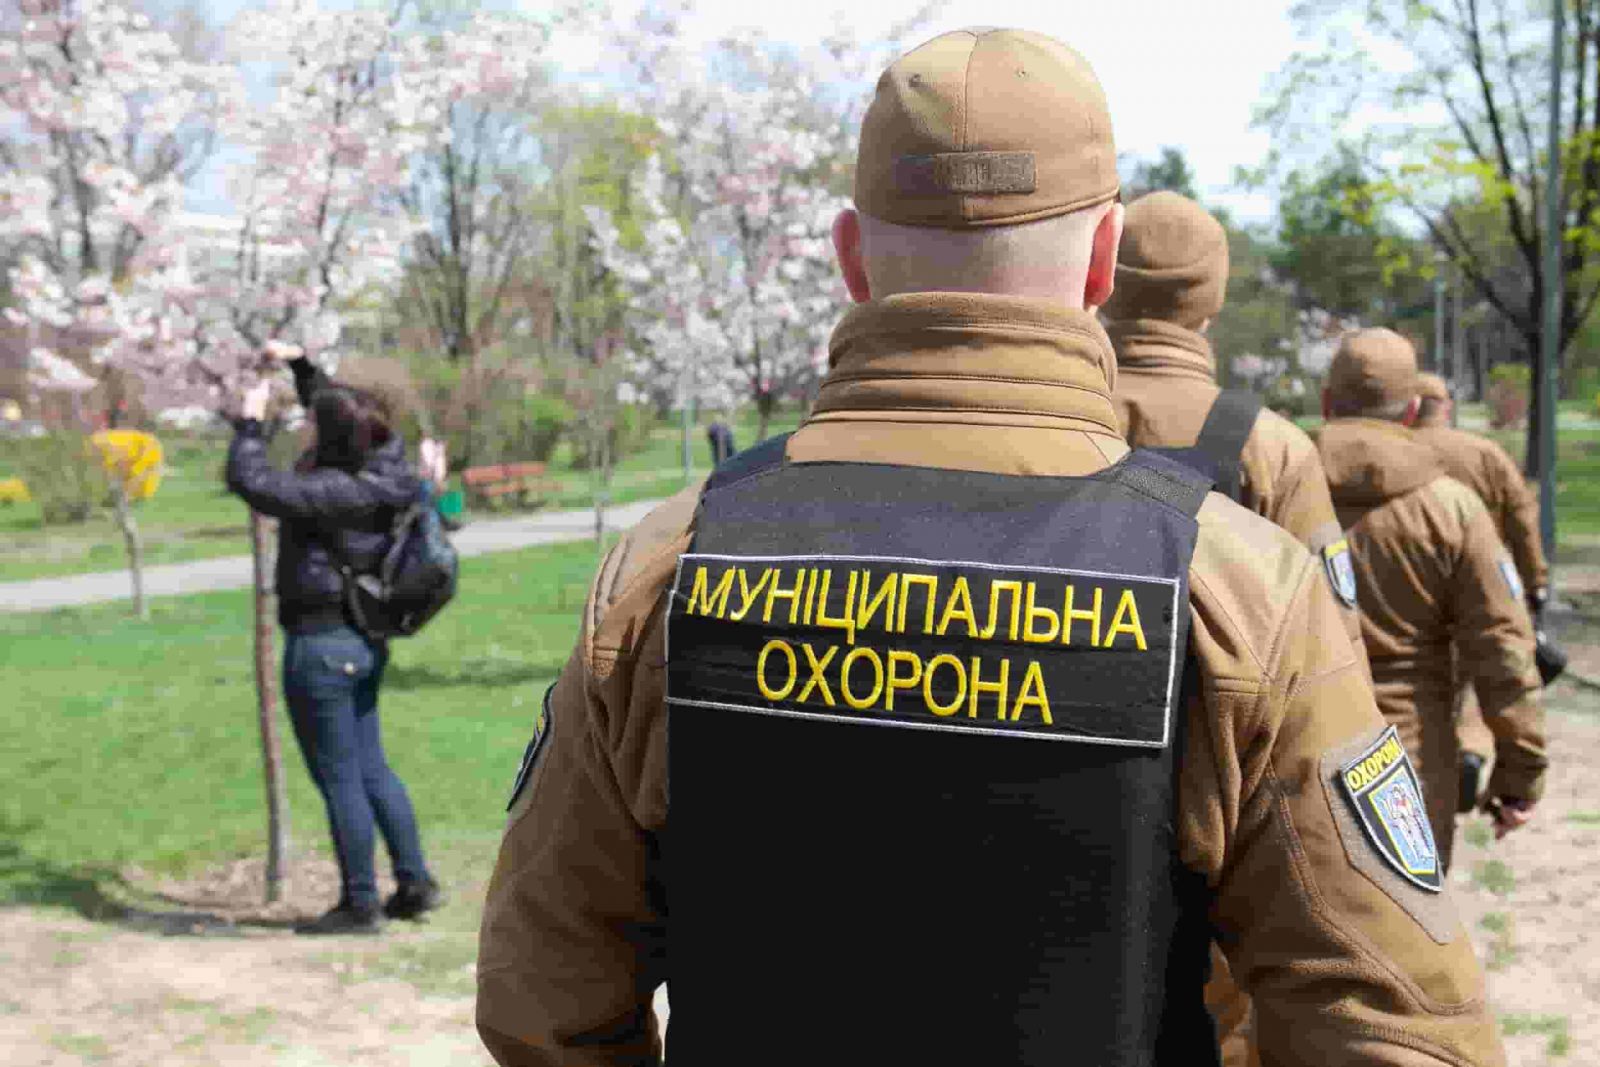 Бывшего руководителя киевской “Муниципальной охраны” подозревают в присвоения бюджетных средств